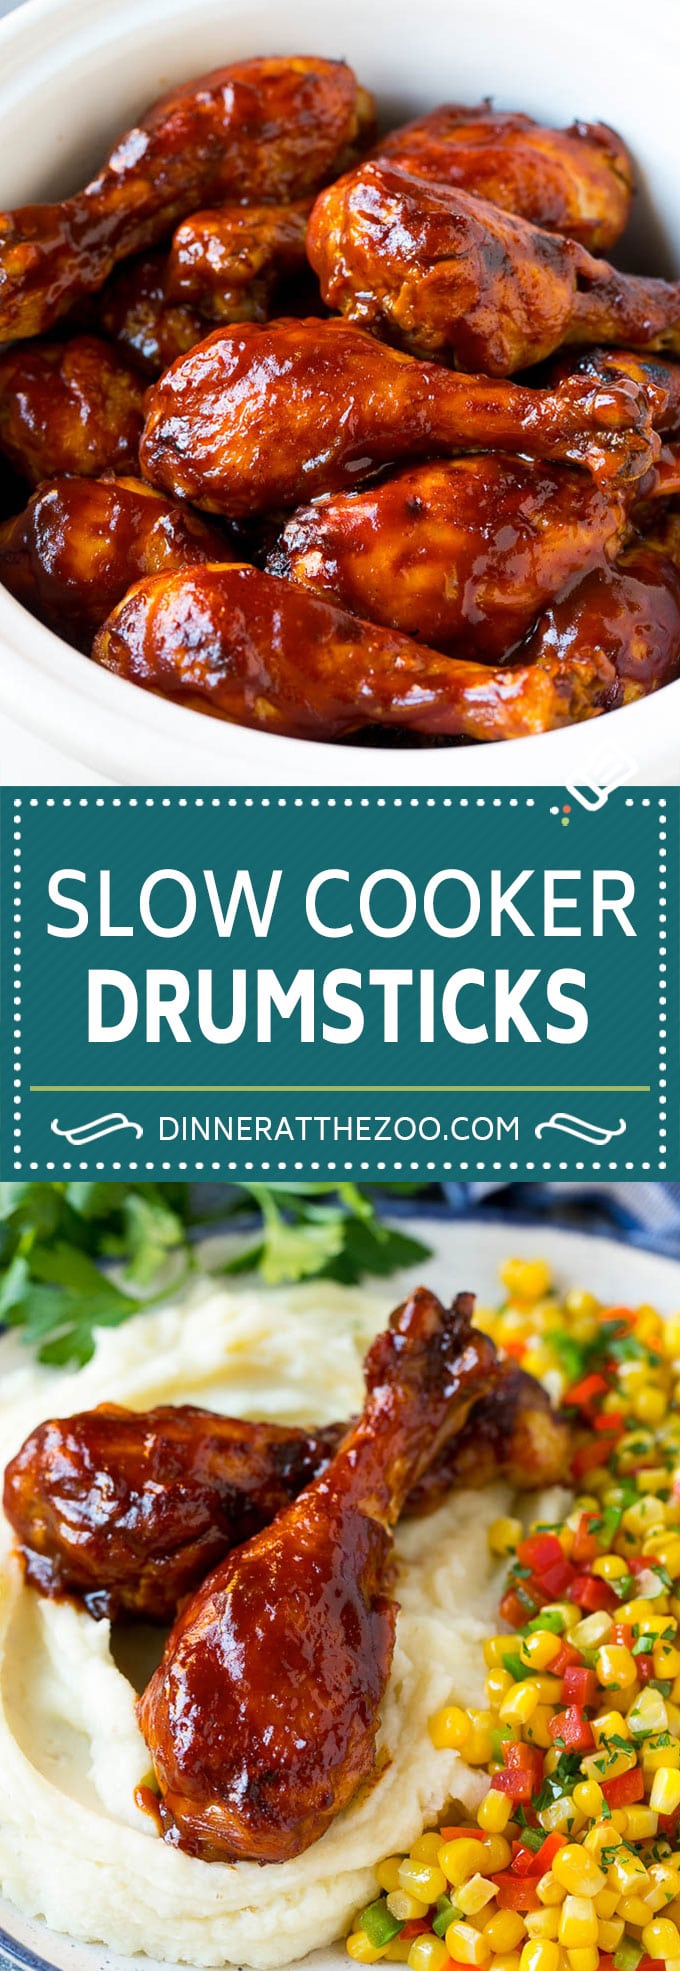 Slow Cooker Chicken Drumsticks Recipe | Crock Pot Chicken Drumsticks | BBQ Chicken Drumsticks #chicken #drumsticks #slowcooker #crockpot #bbq #dinner #dinneratthezoo